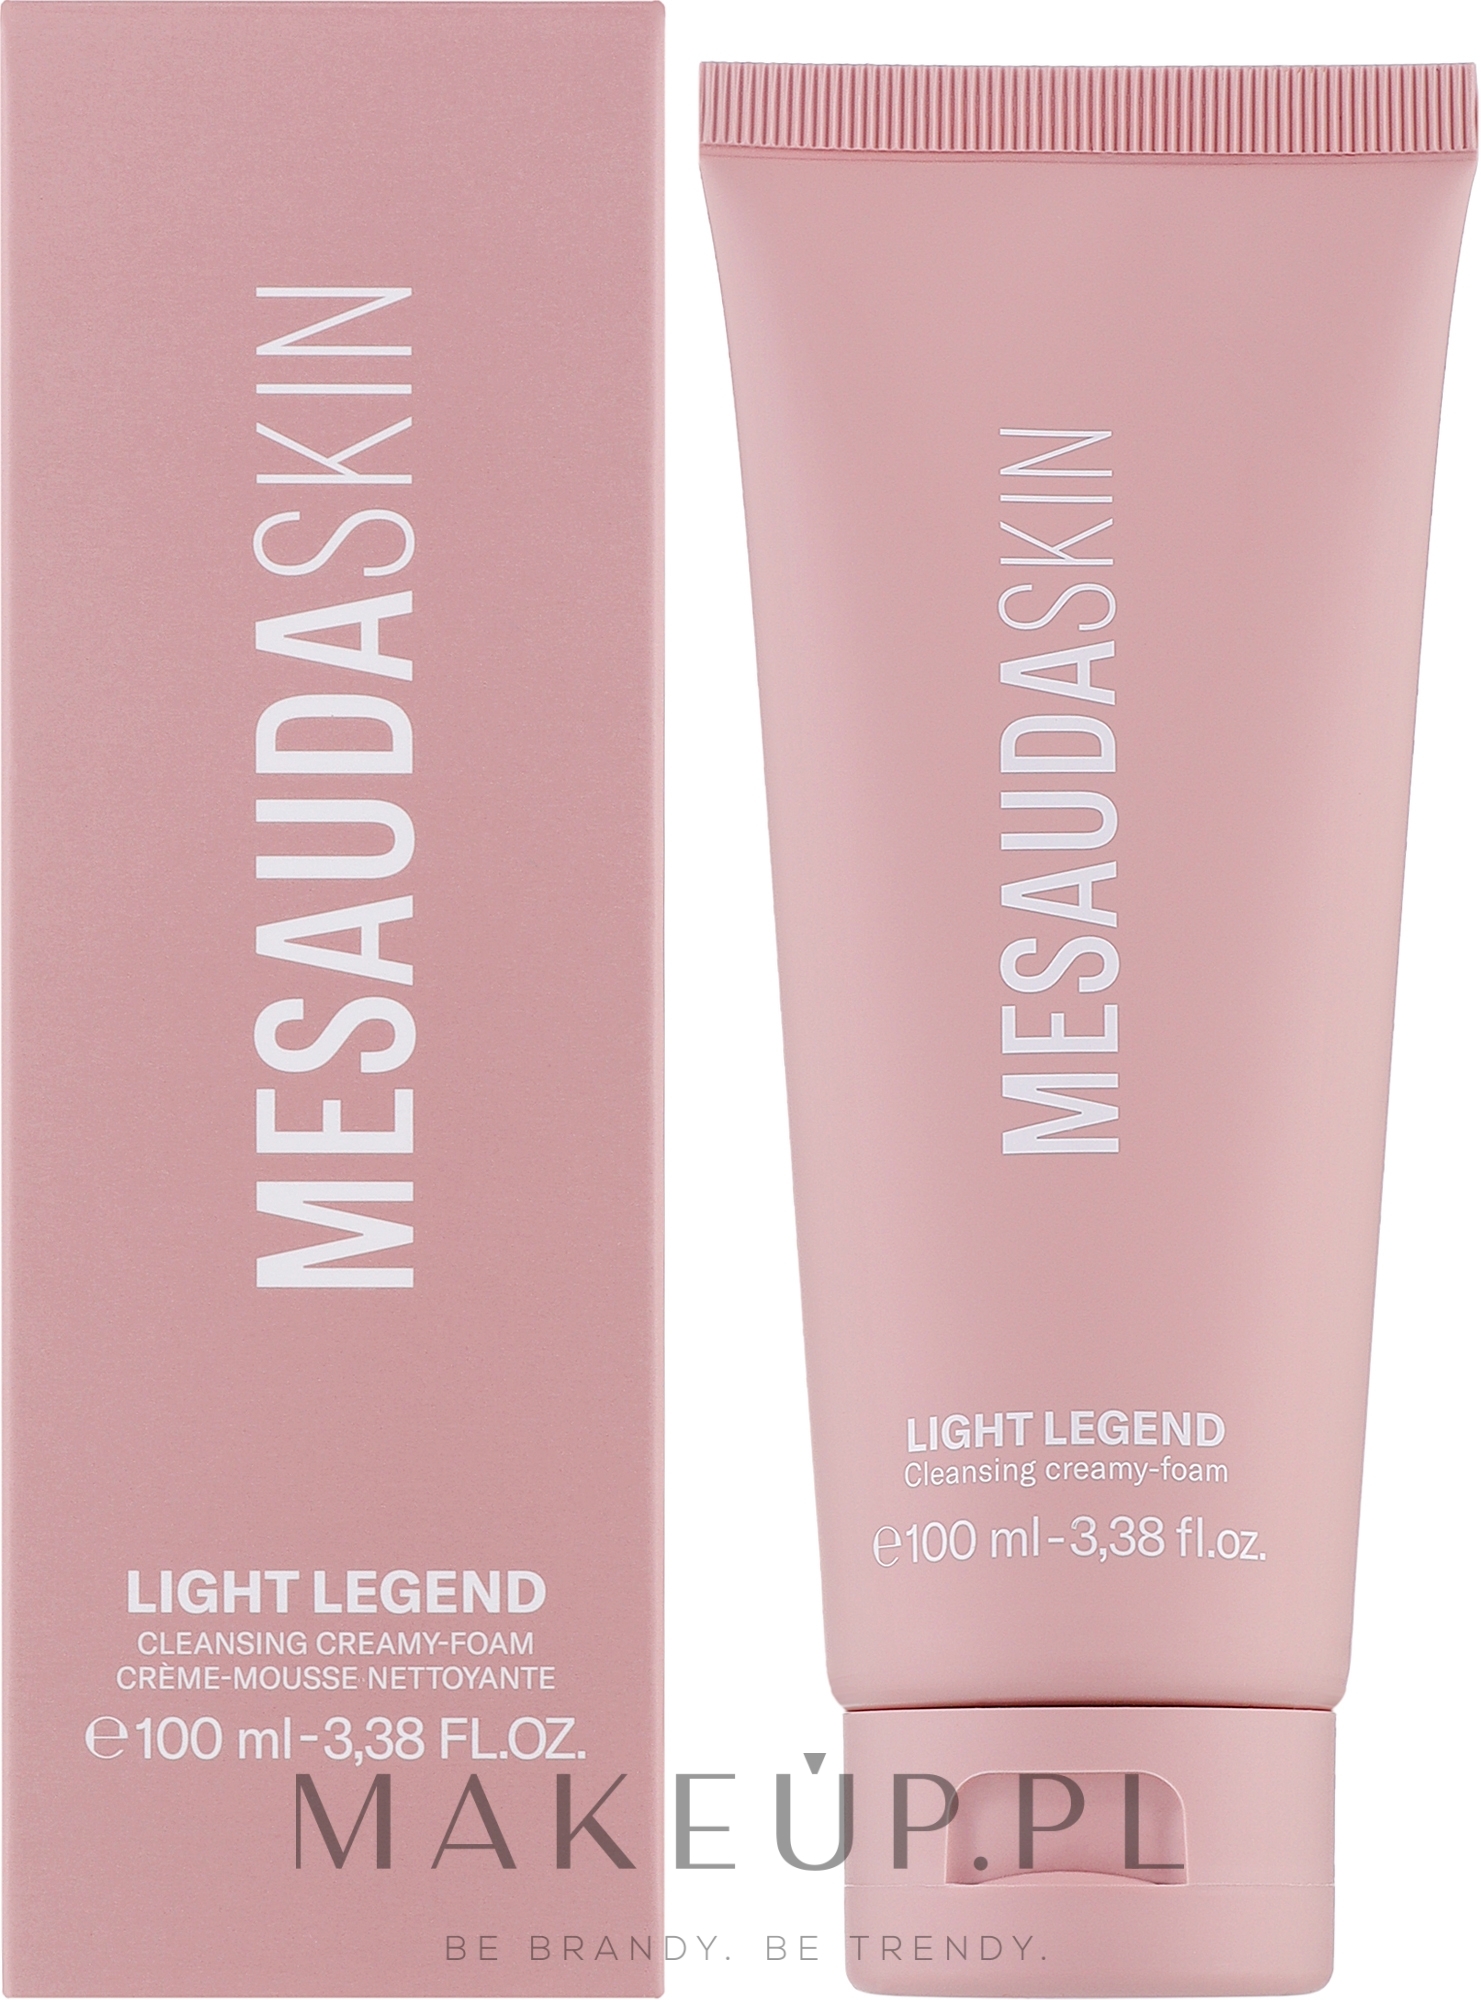 Oczyszczający krem do twarzy - Mesauda Skin Light Legend Cleansing Creamy-Foam — Zdjęcie 100 ml